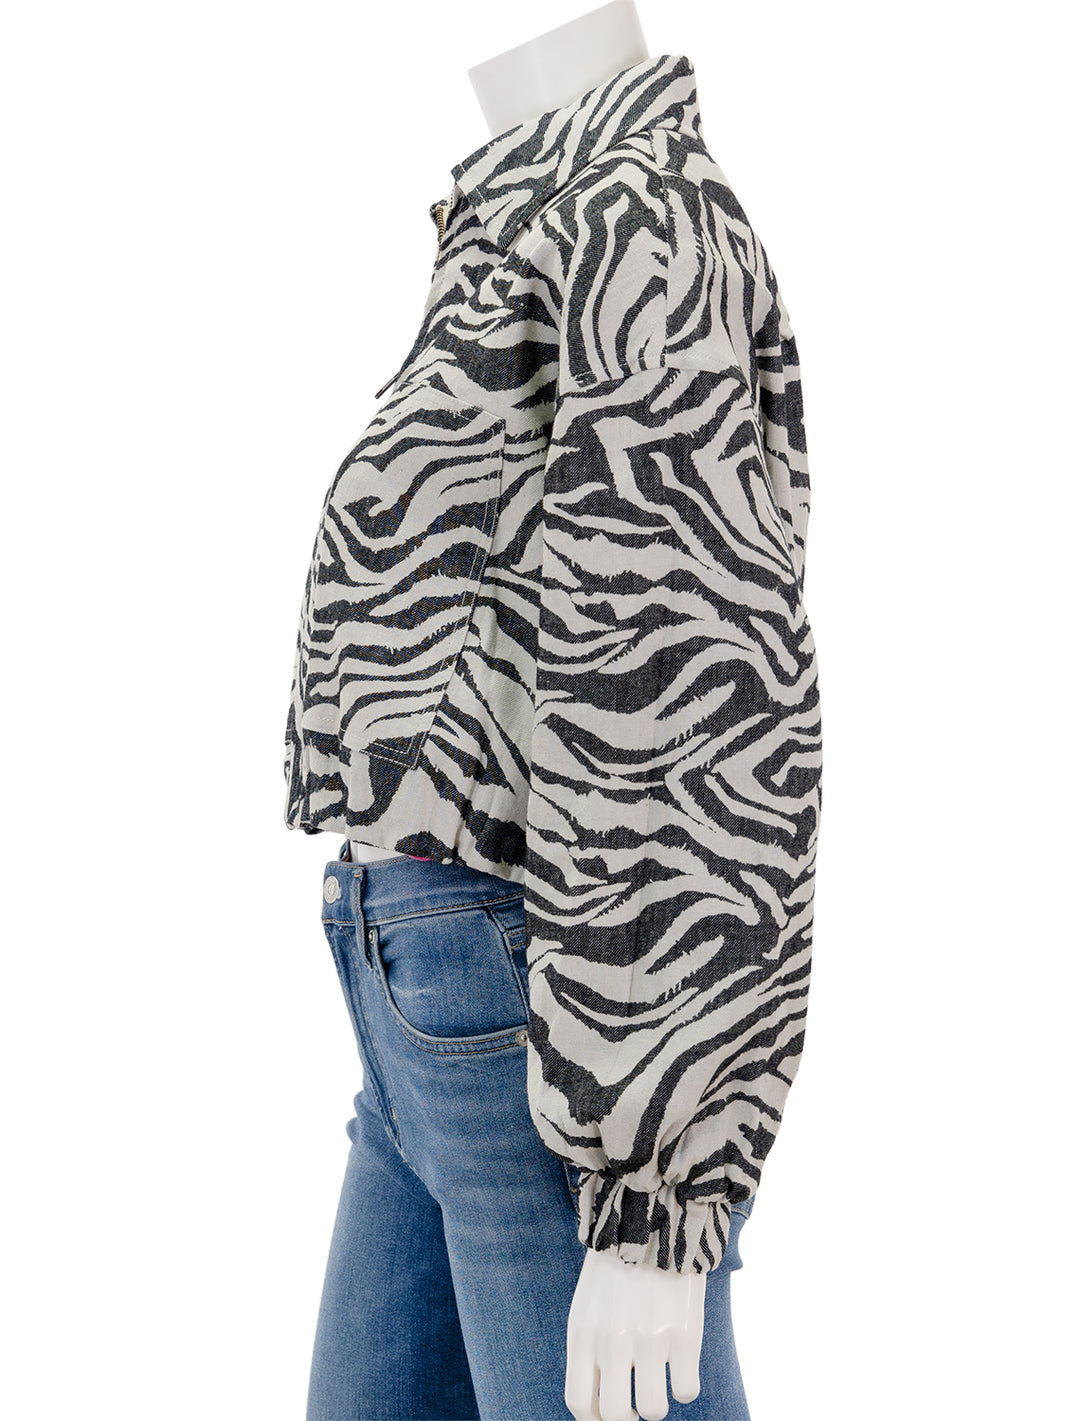 Side view of Ulla Johnson's Ariele Jacket in Zebra.